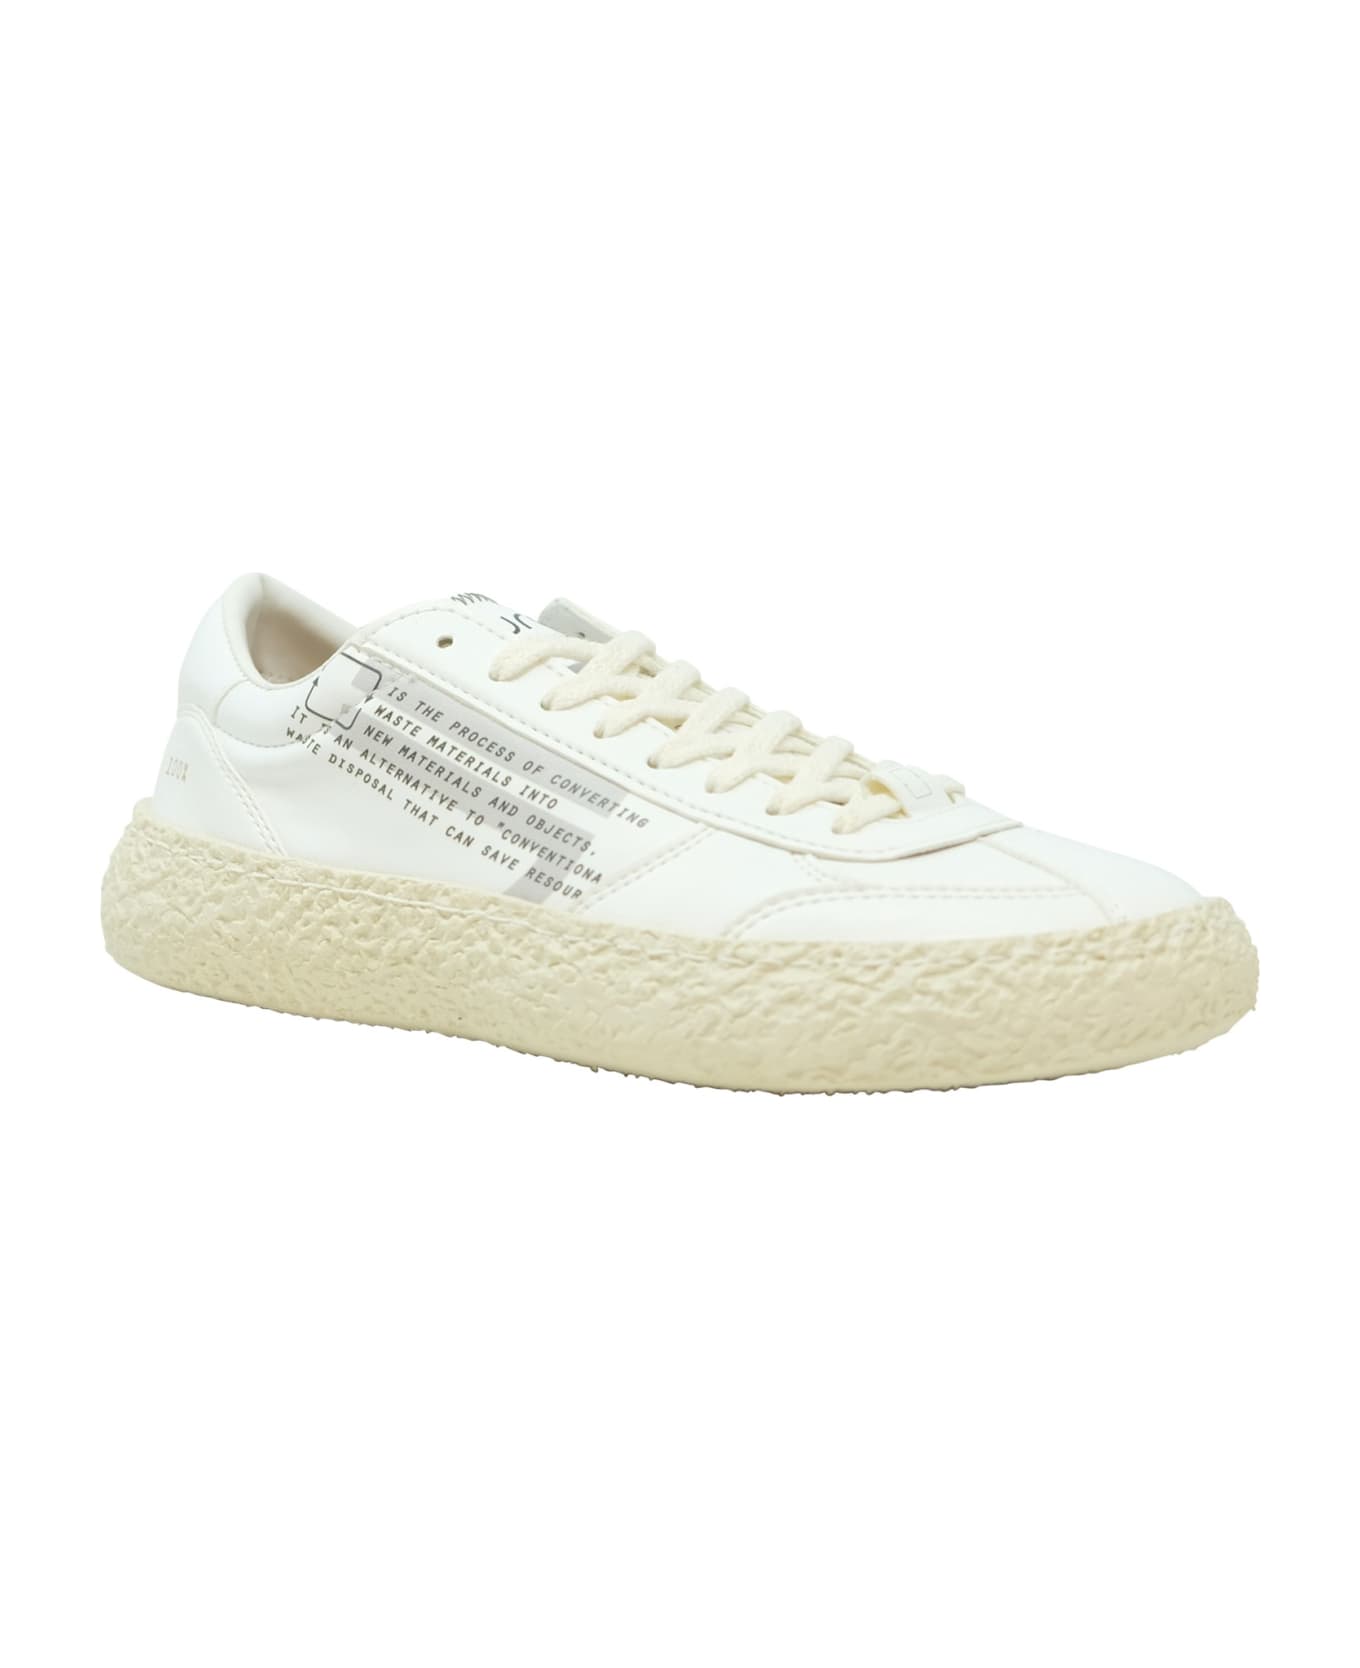 Puraai Leather Sneakers - WHITE